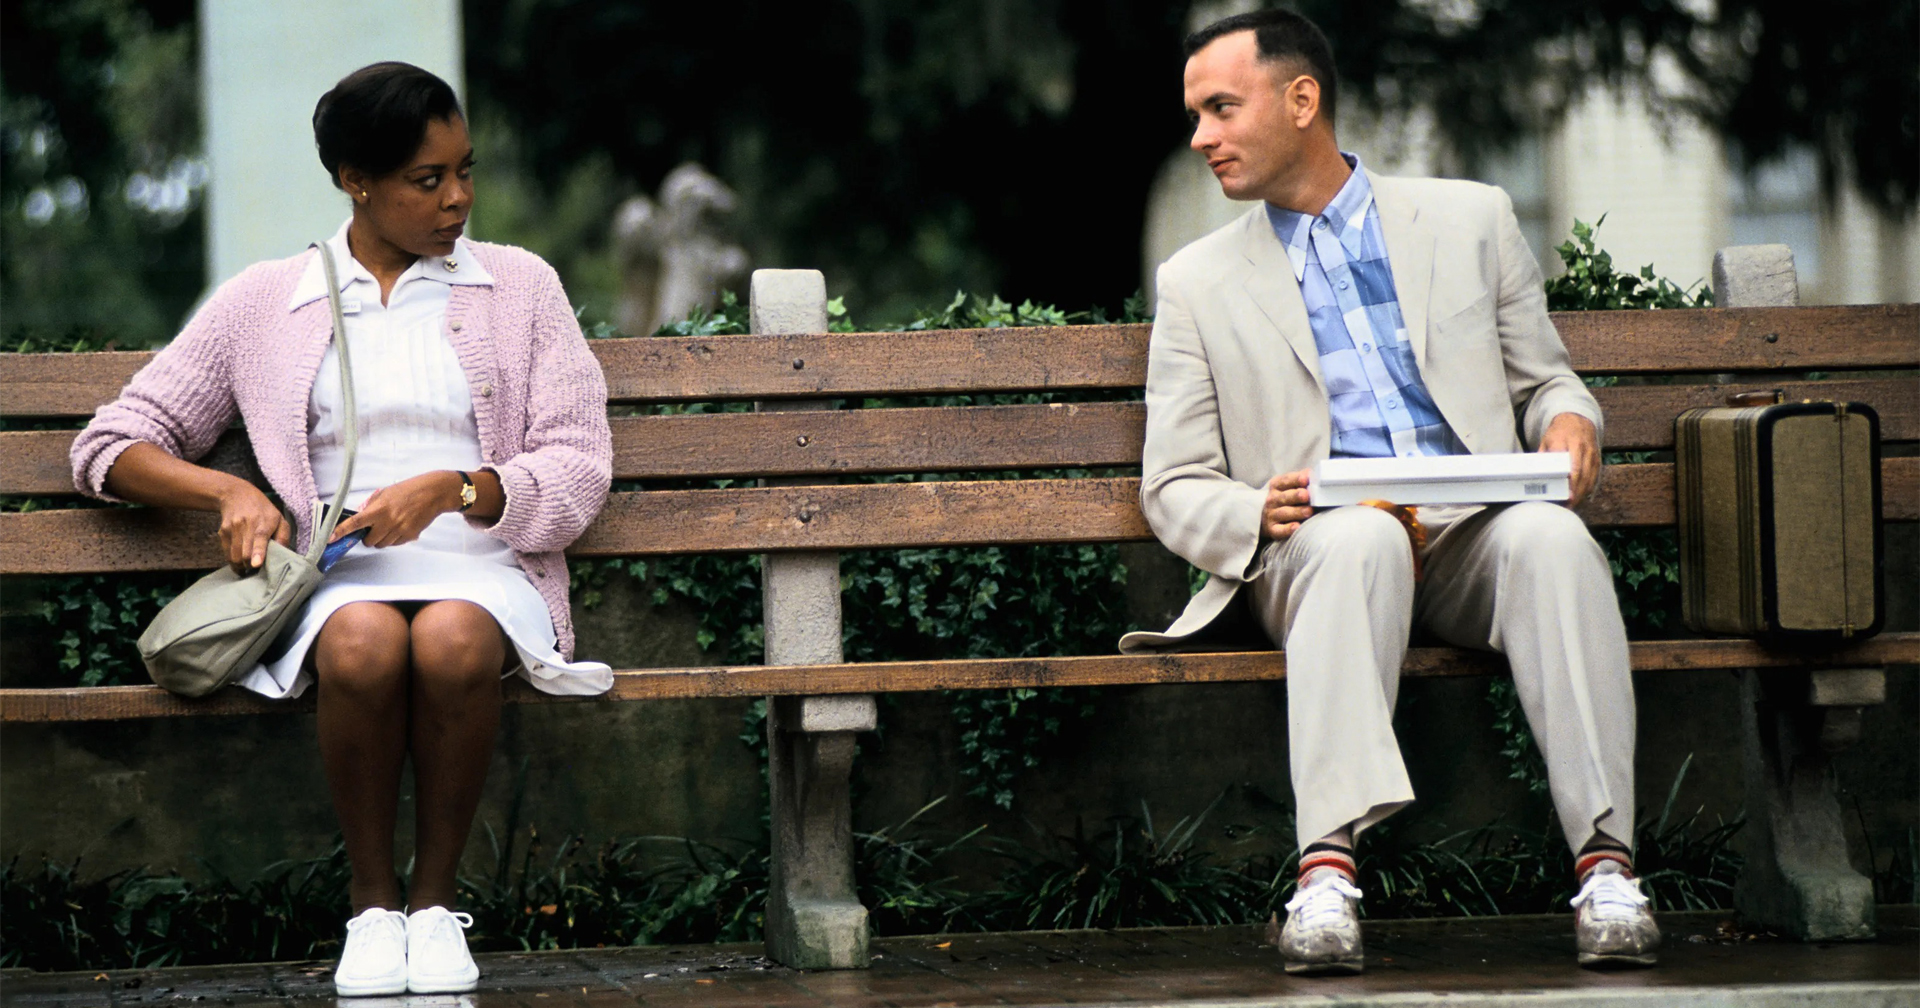 “ใครจะมาสนใจ” ‘Tom Hanks’ คิดว่าฉากม้านั่งรอรถเมล์ใน ‘Forrest Gump’ ไม่ได้สำคัญต่อหนังและน่าสนใจอะไรขนาดนั้น